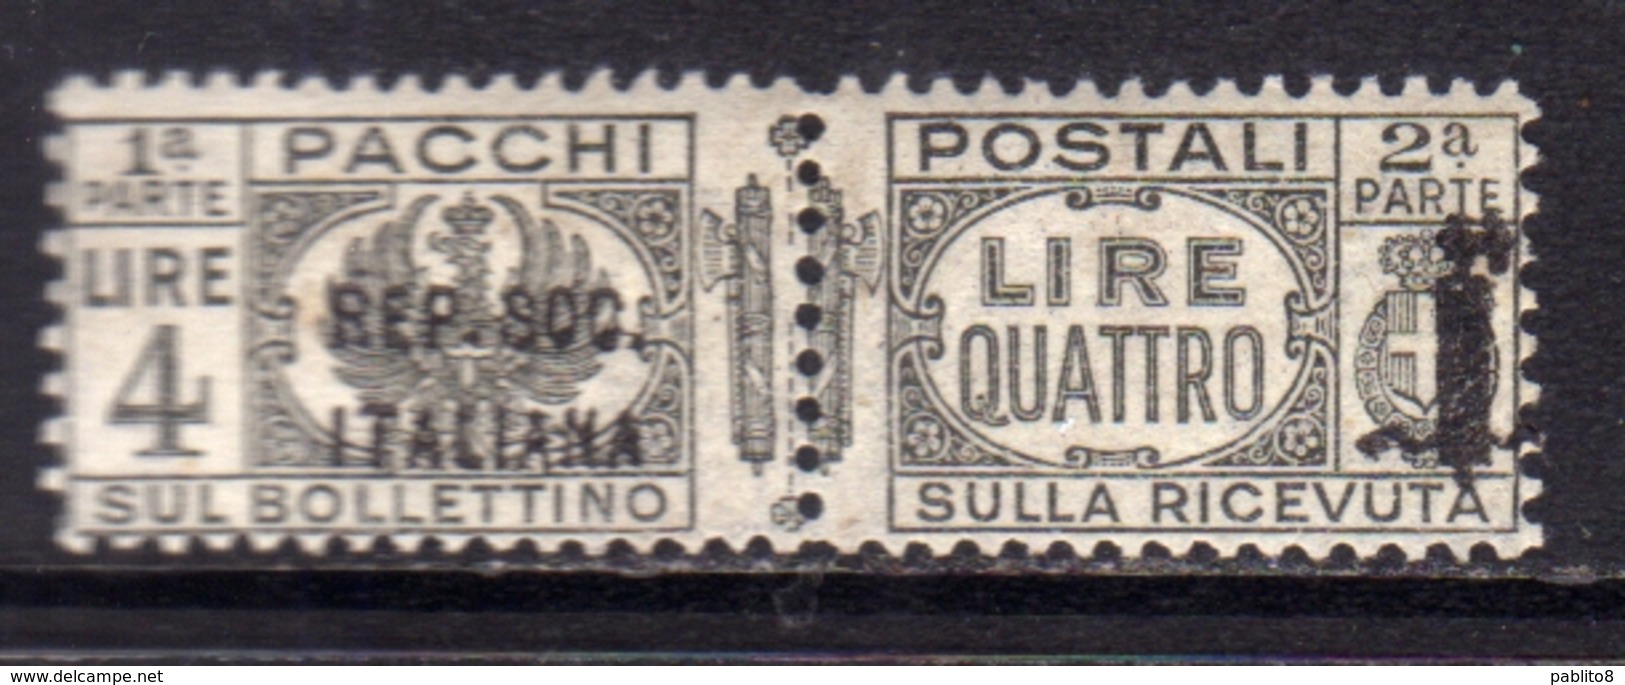 ITALIA REGNO ITALY 1944 VARIETÀ RSI REPUBBLICA SOCIALE ITALIANA PACCHI POSTALI PARCEL POST FASCIO LIRE 4 MNH FIRMATO - Pacchi Postali